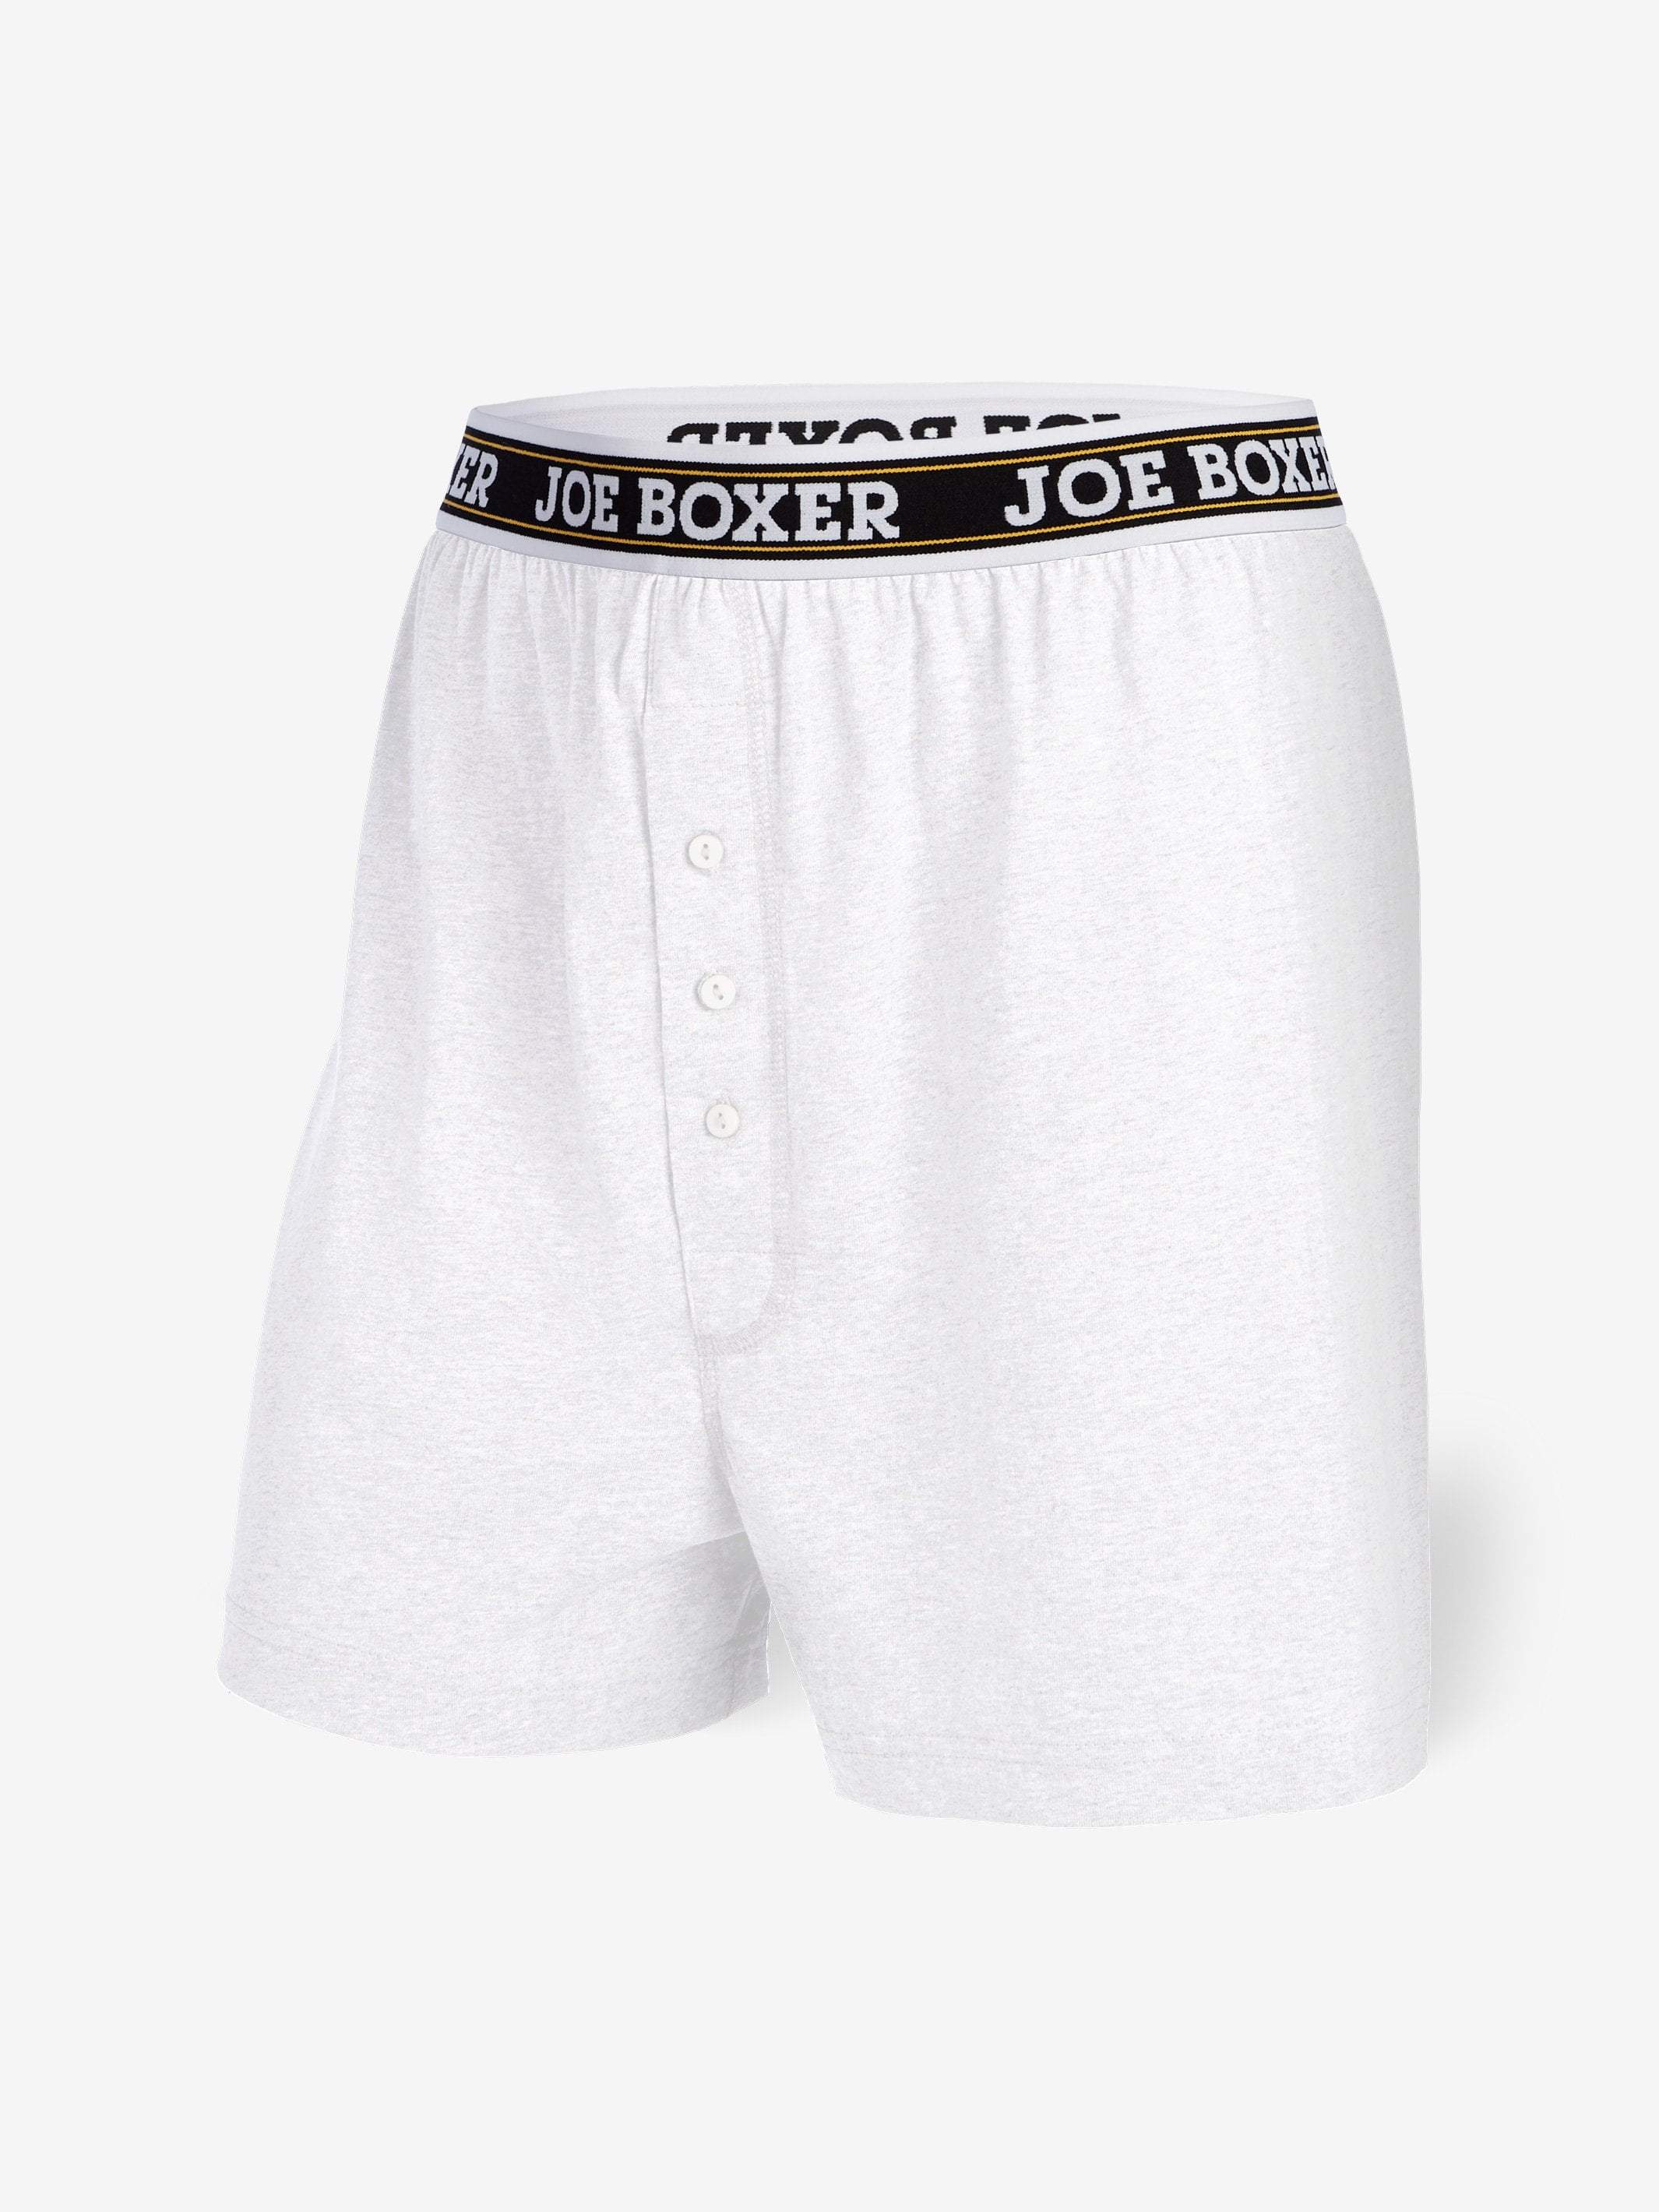 Calvin Klein Men's Underwear Cotton Classics Briefs 6 Pack, White